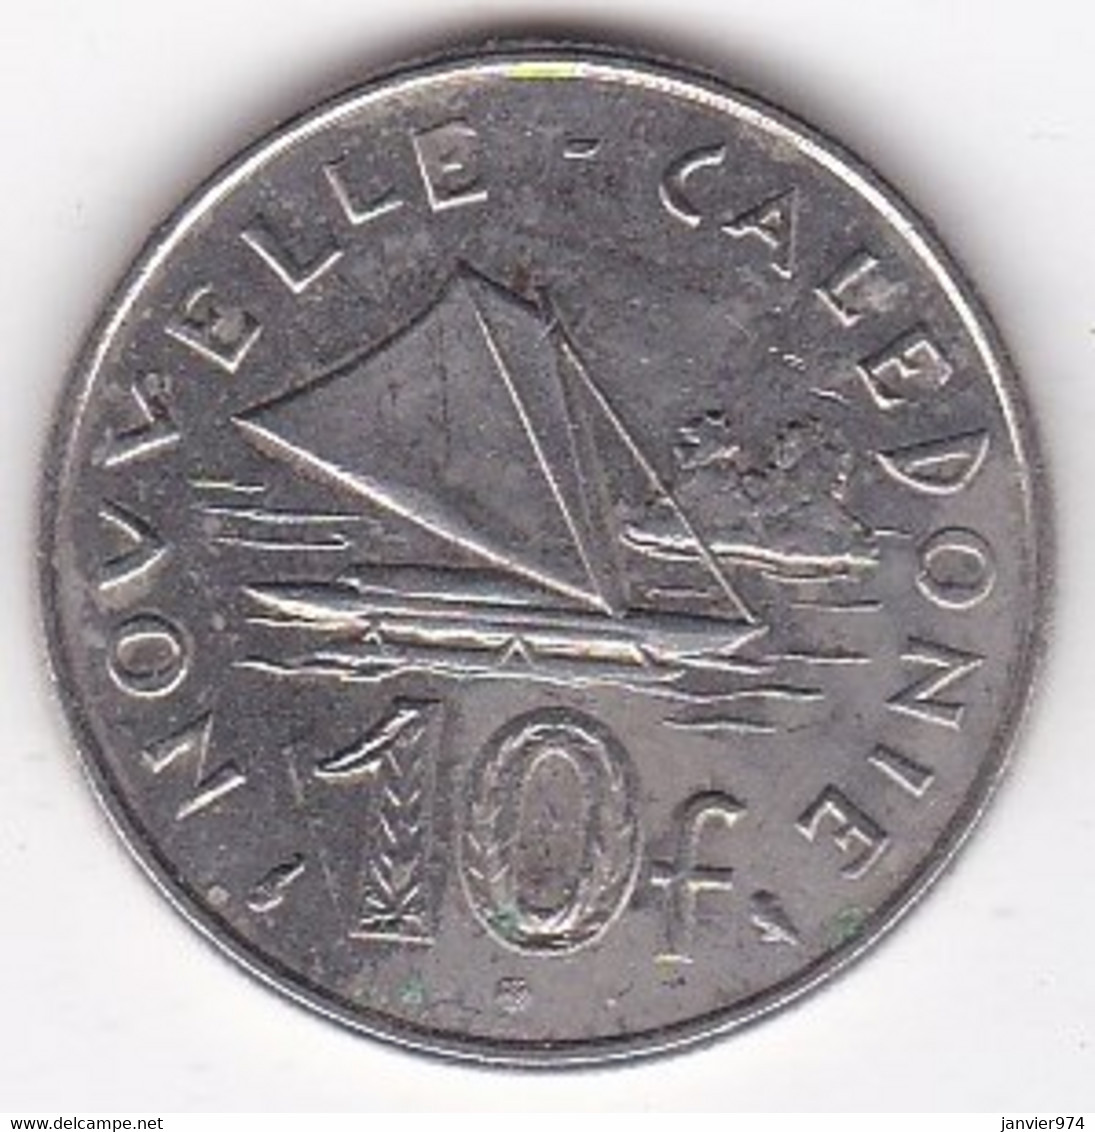 Nouvelle-Calédonie. 10 Francs 1973. En Nickel - Nouvelle-Calédonie